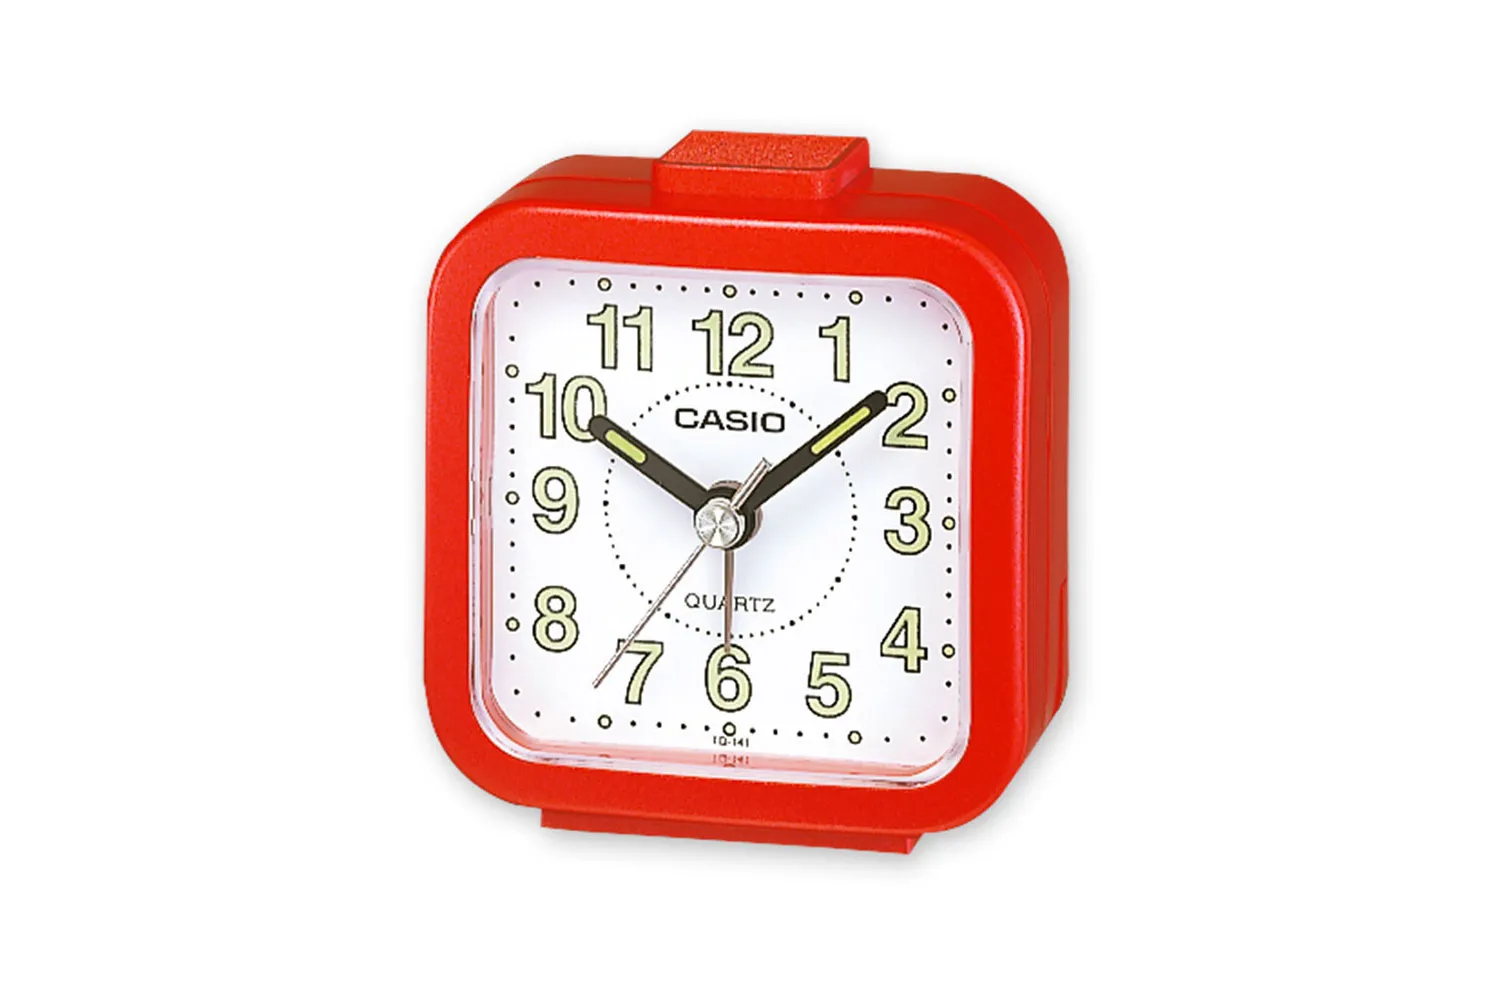 Reloj CASIO Clocks tq-141-4ef